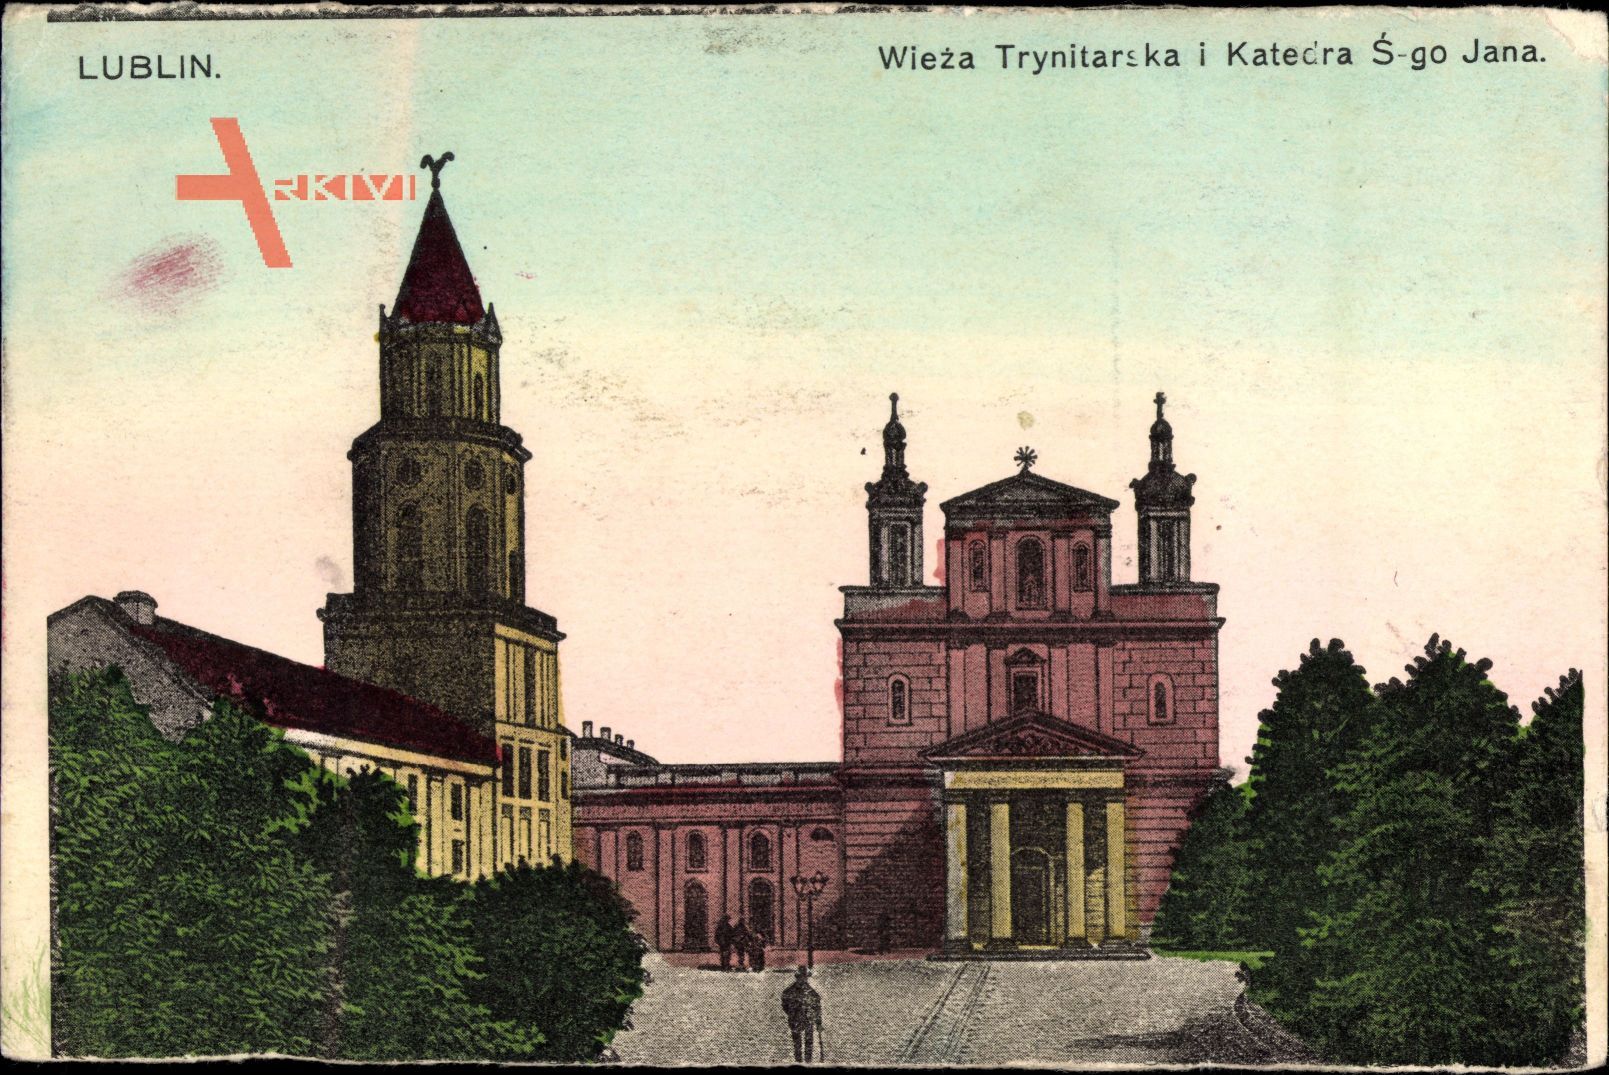 Lublin Polen, Wieza Trynitarska i Katedra Swietego Jana